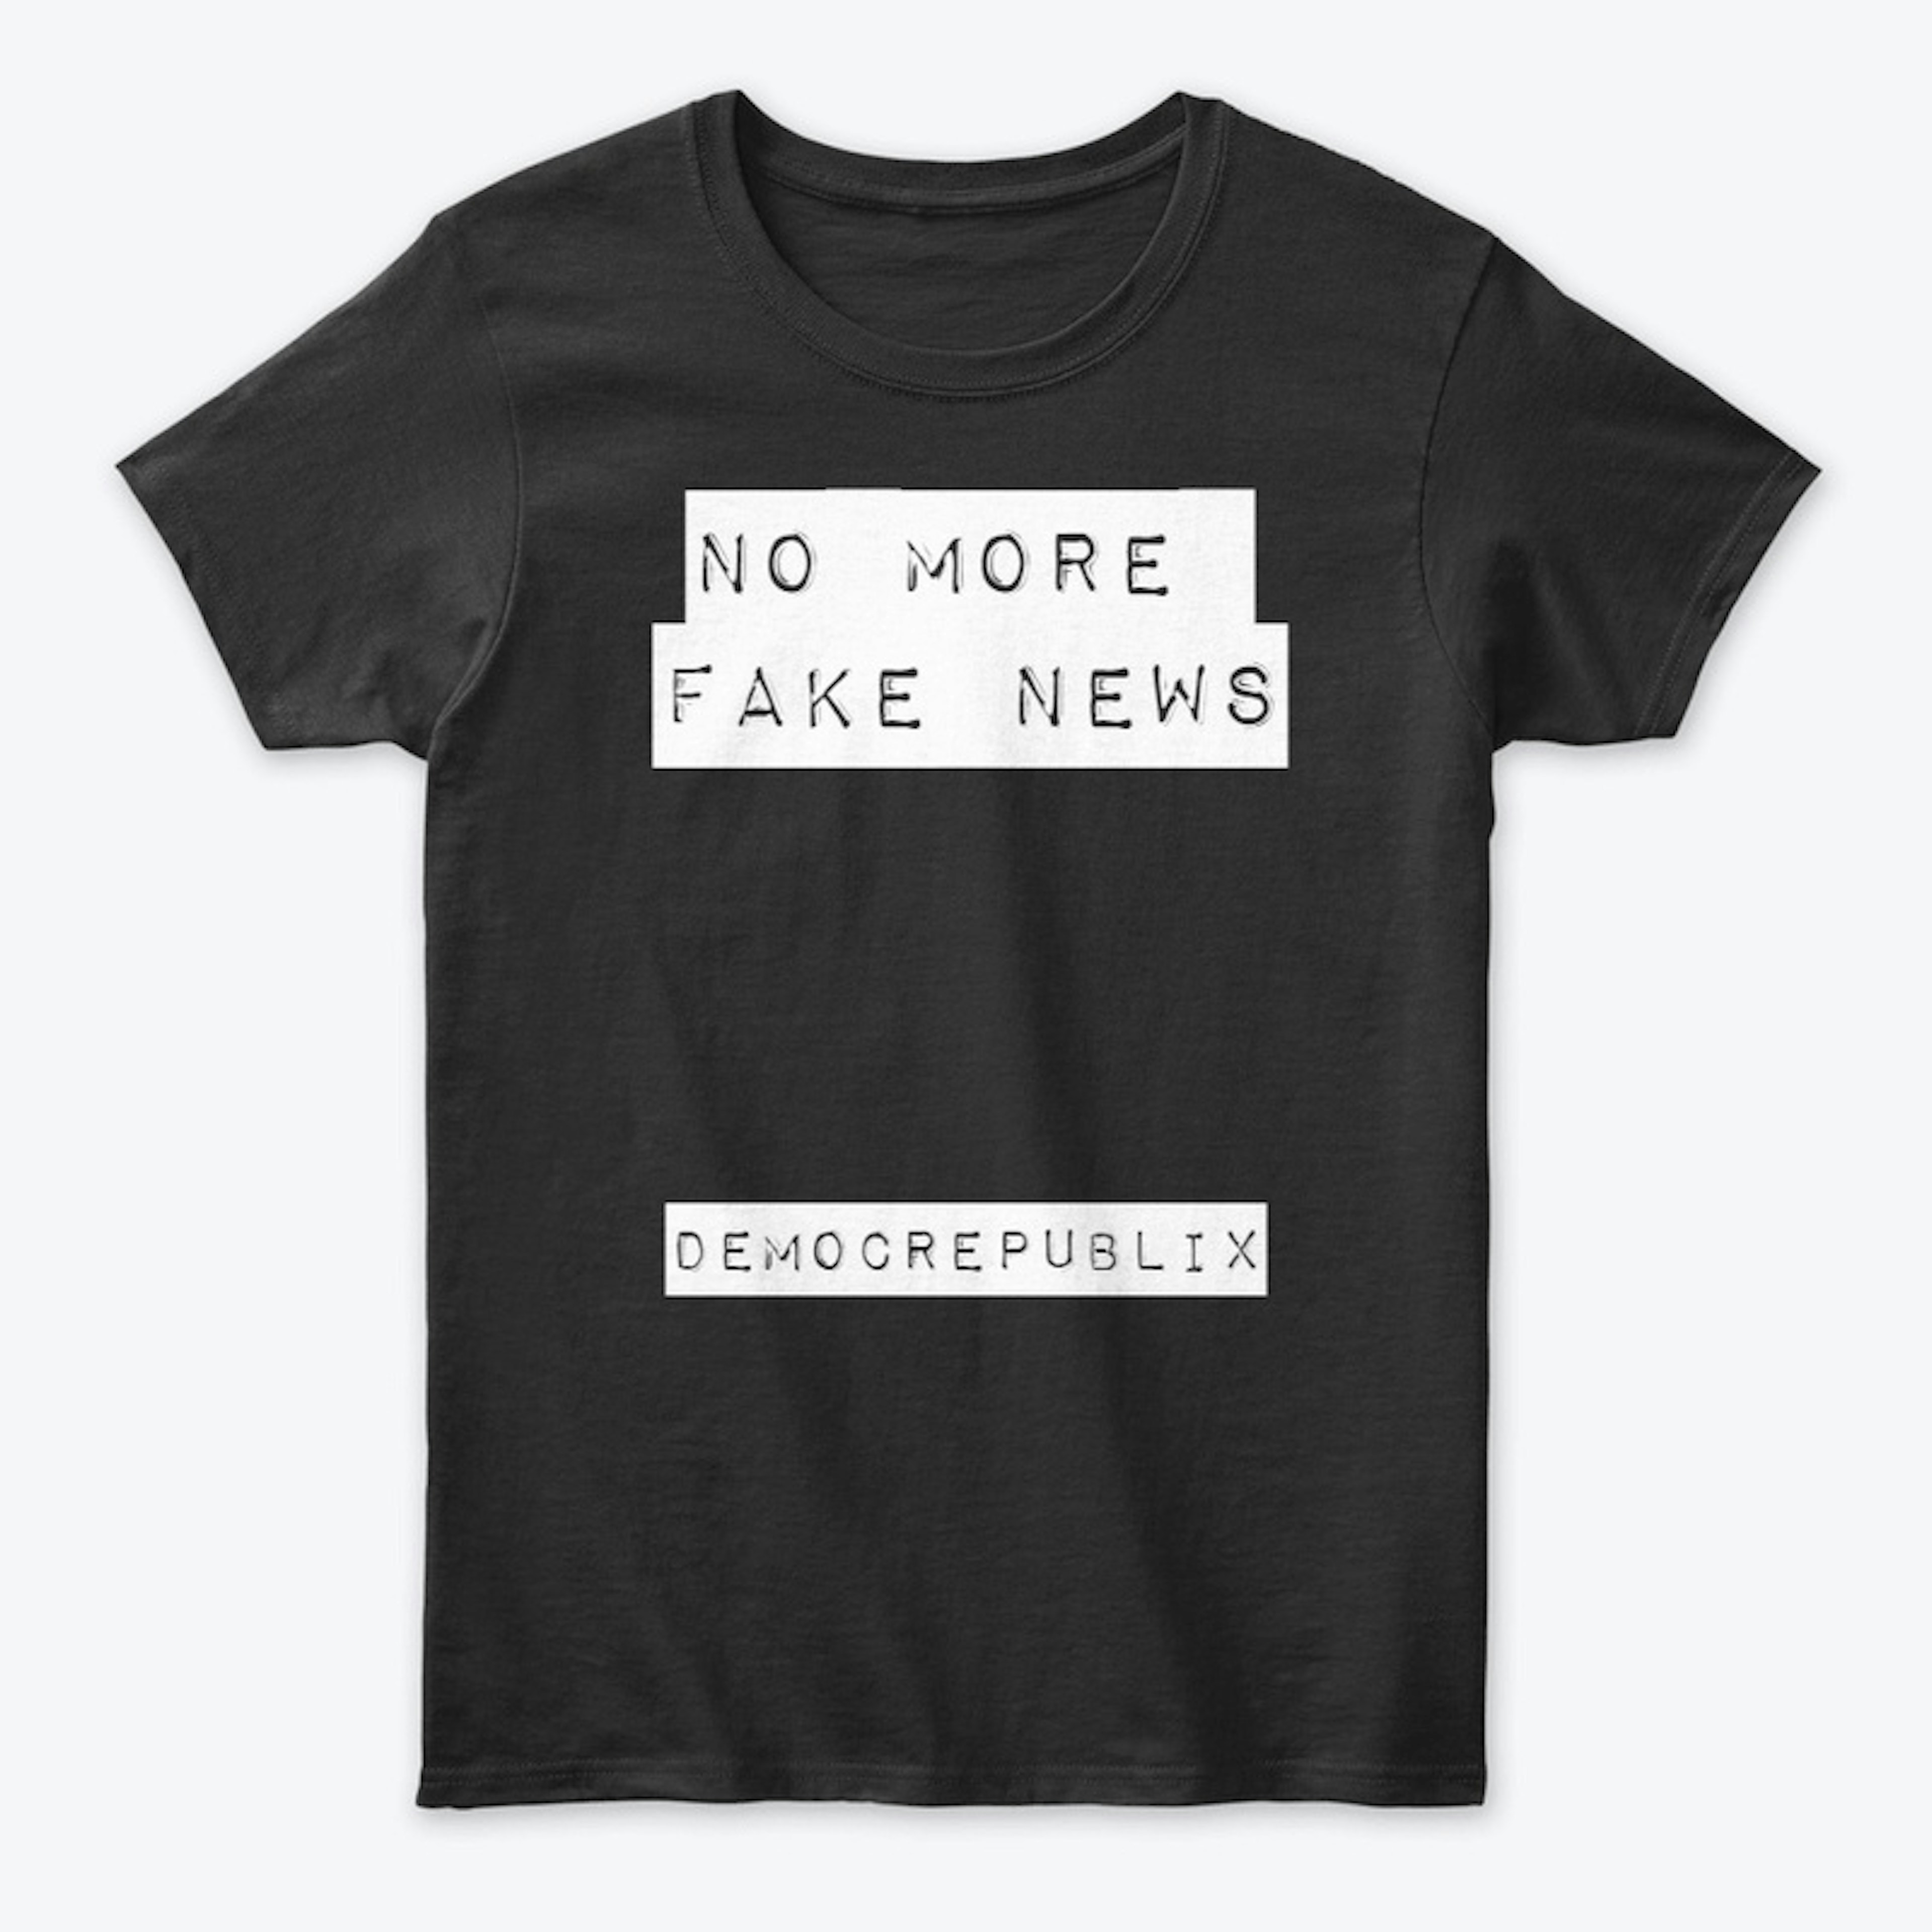 No more fake news